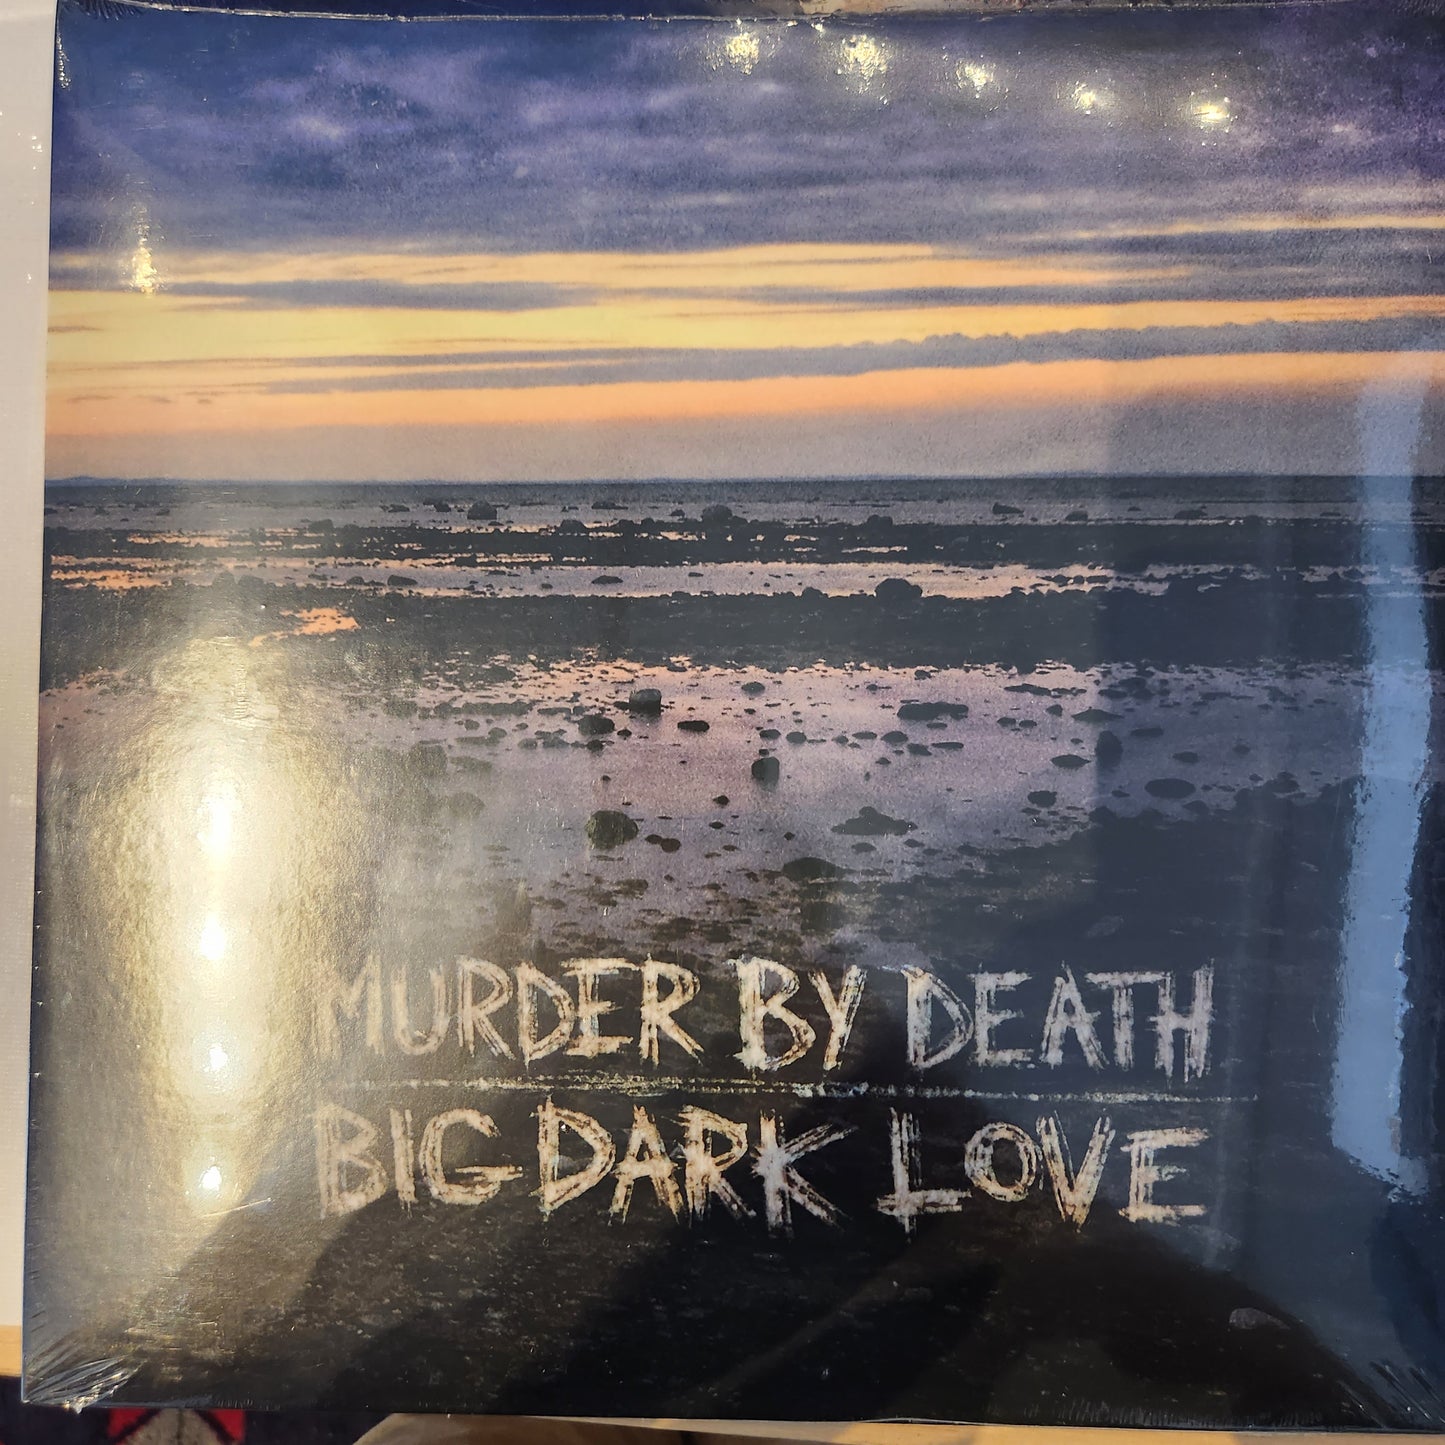 Murder By Death - Big Dark Love - Vinyl LP